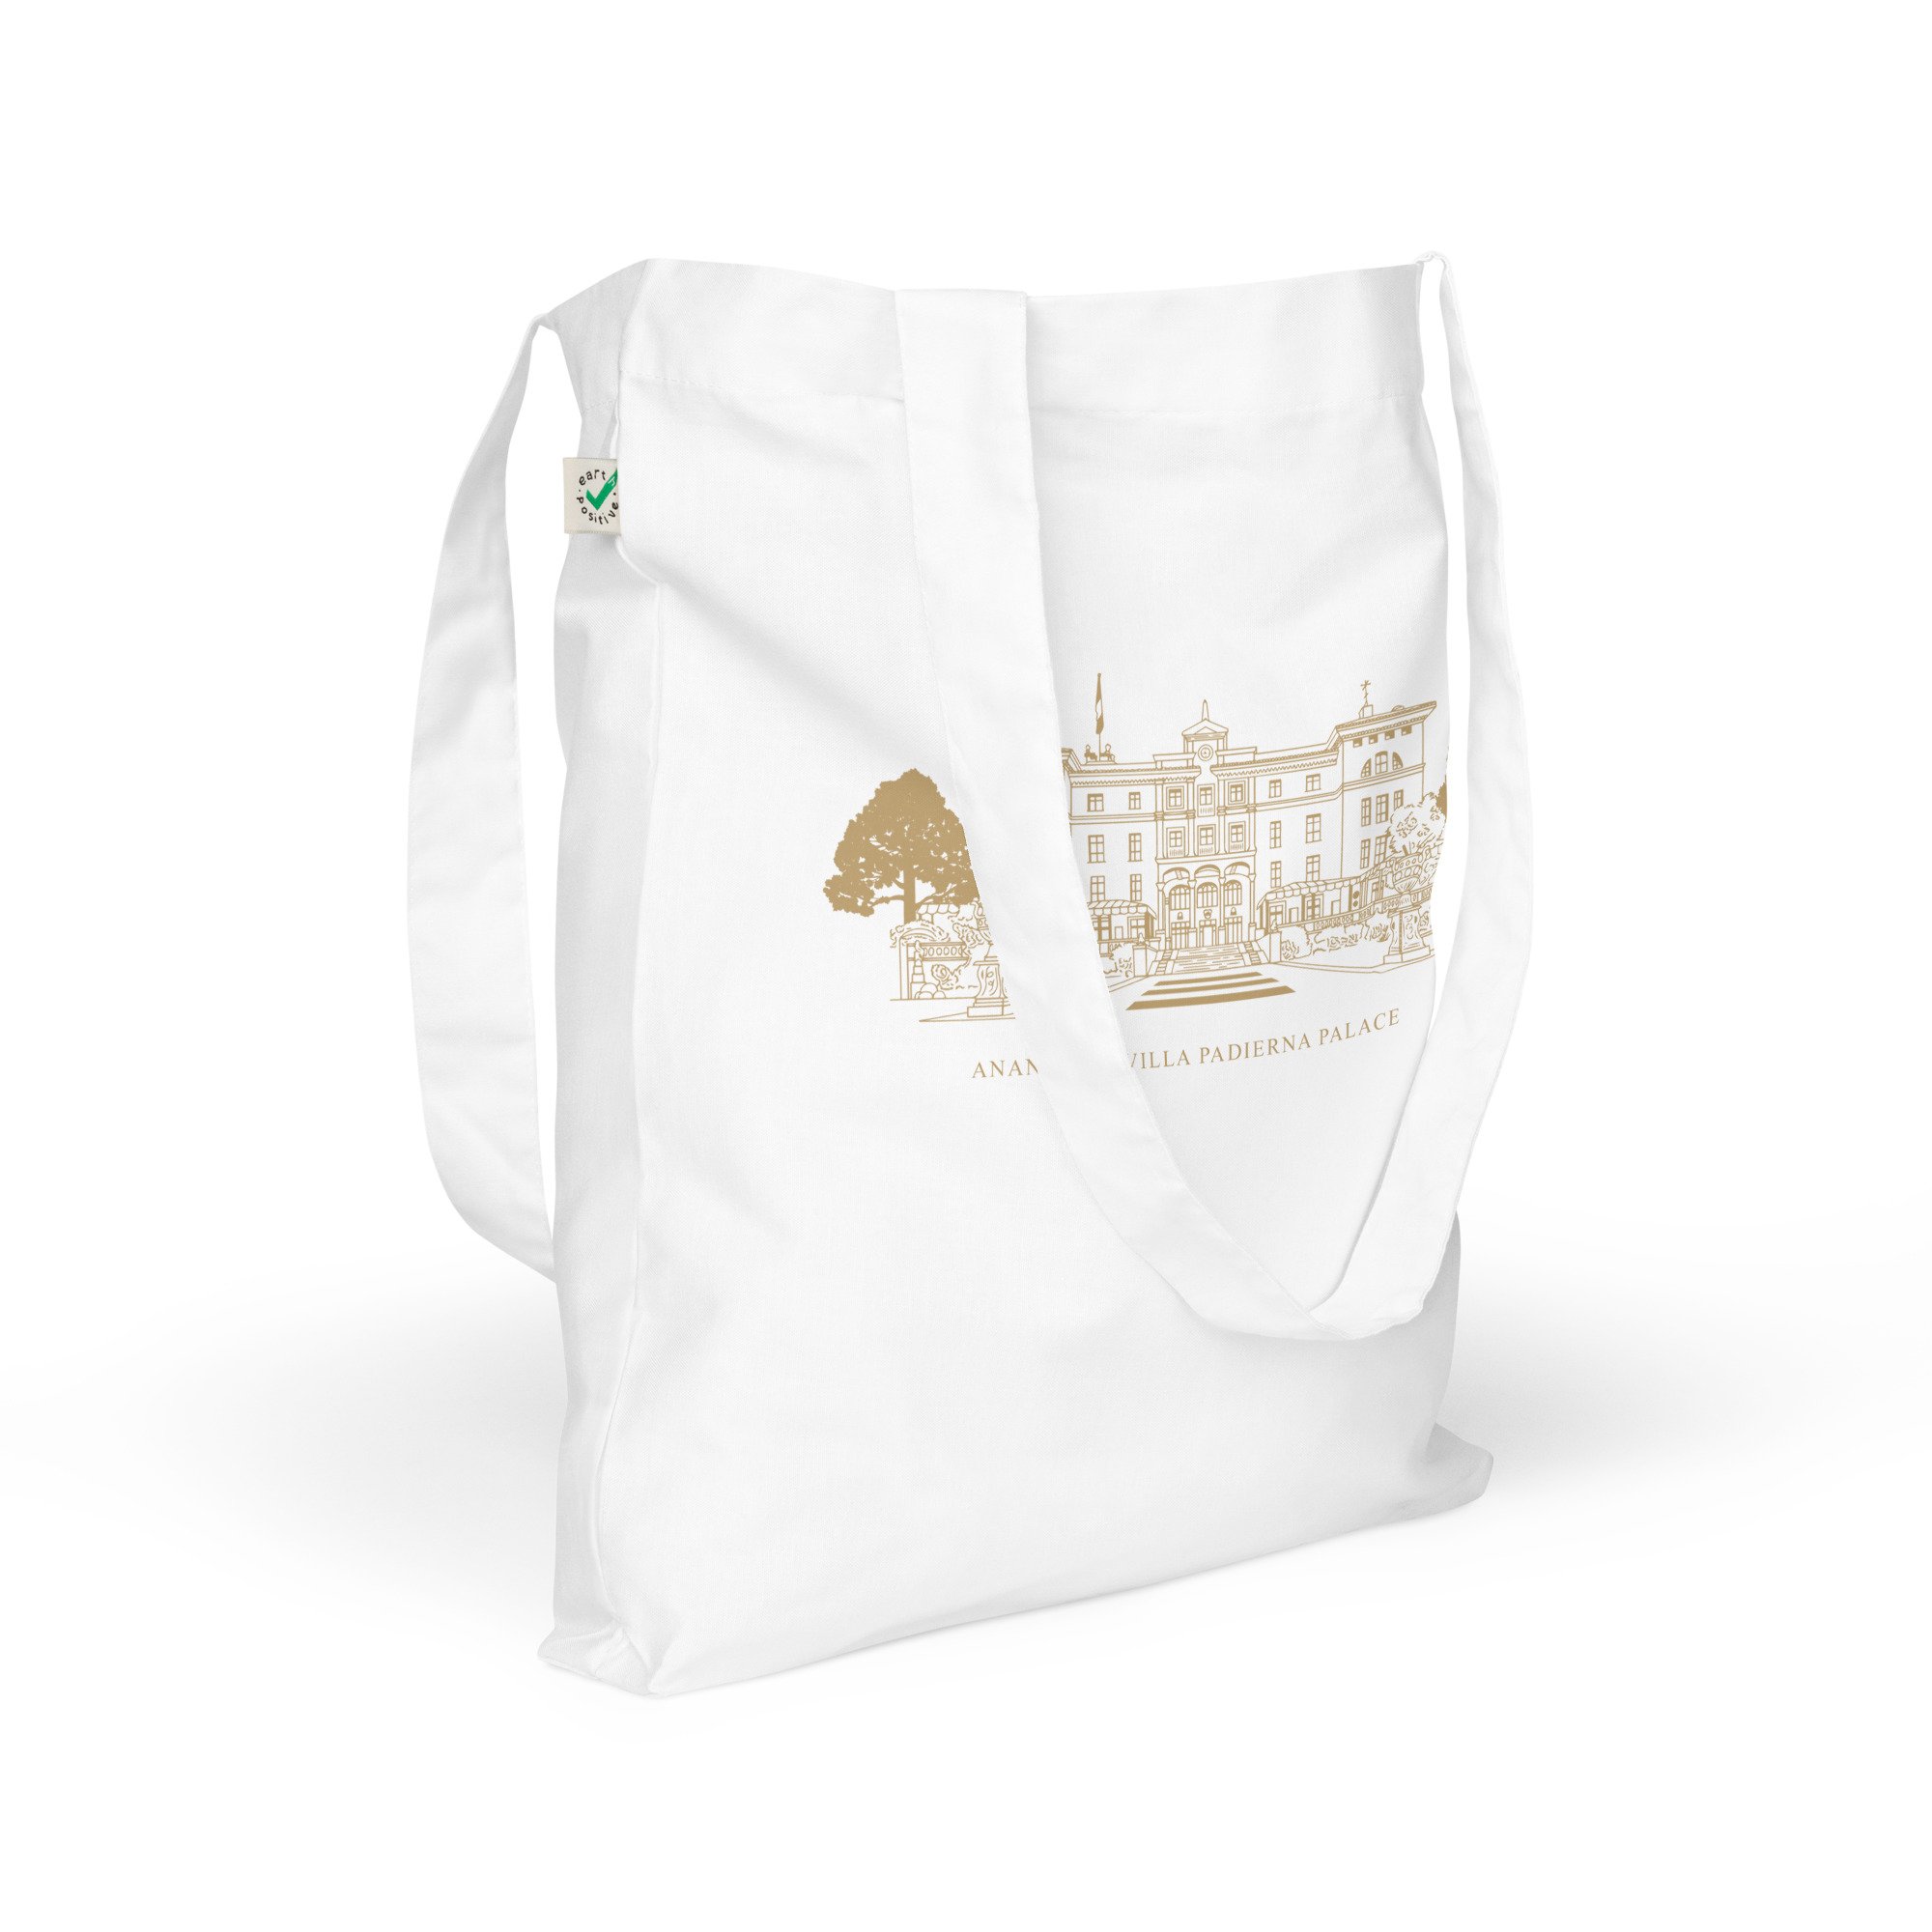 Anantara Villa Padierna Palace wedding favor bags (1).jpg